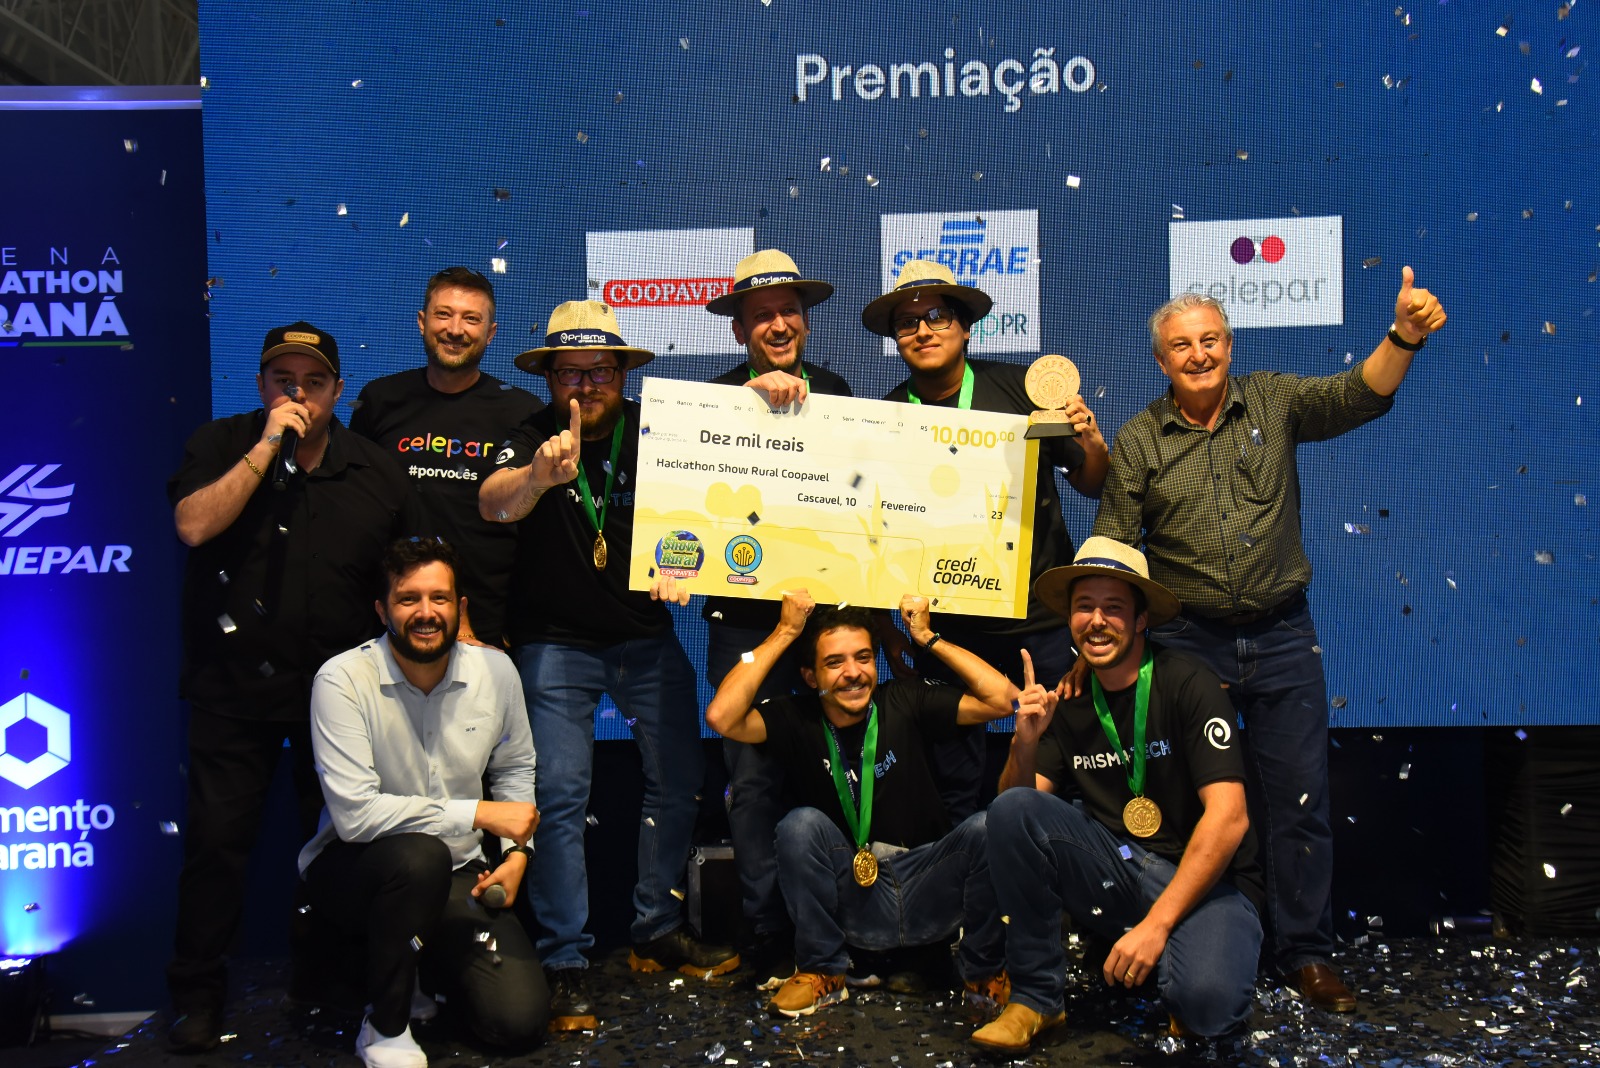 PrismaTech vence hackathon do 35º Show Rural Coopavel